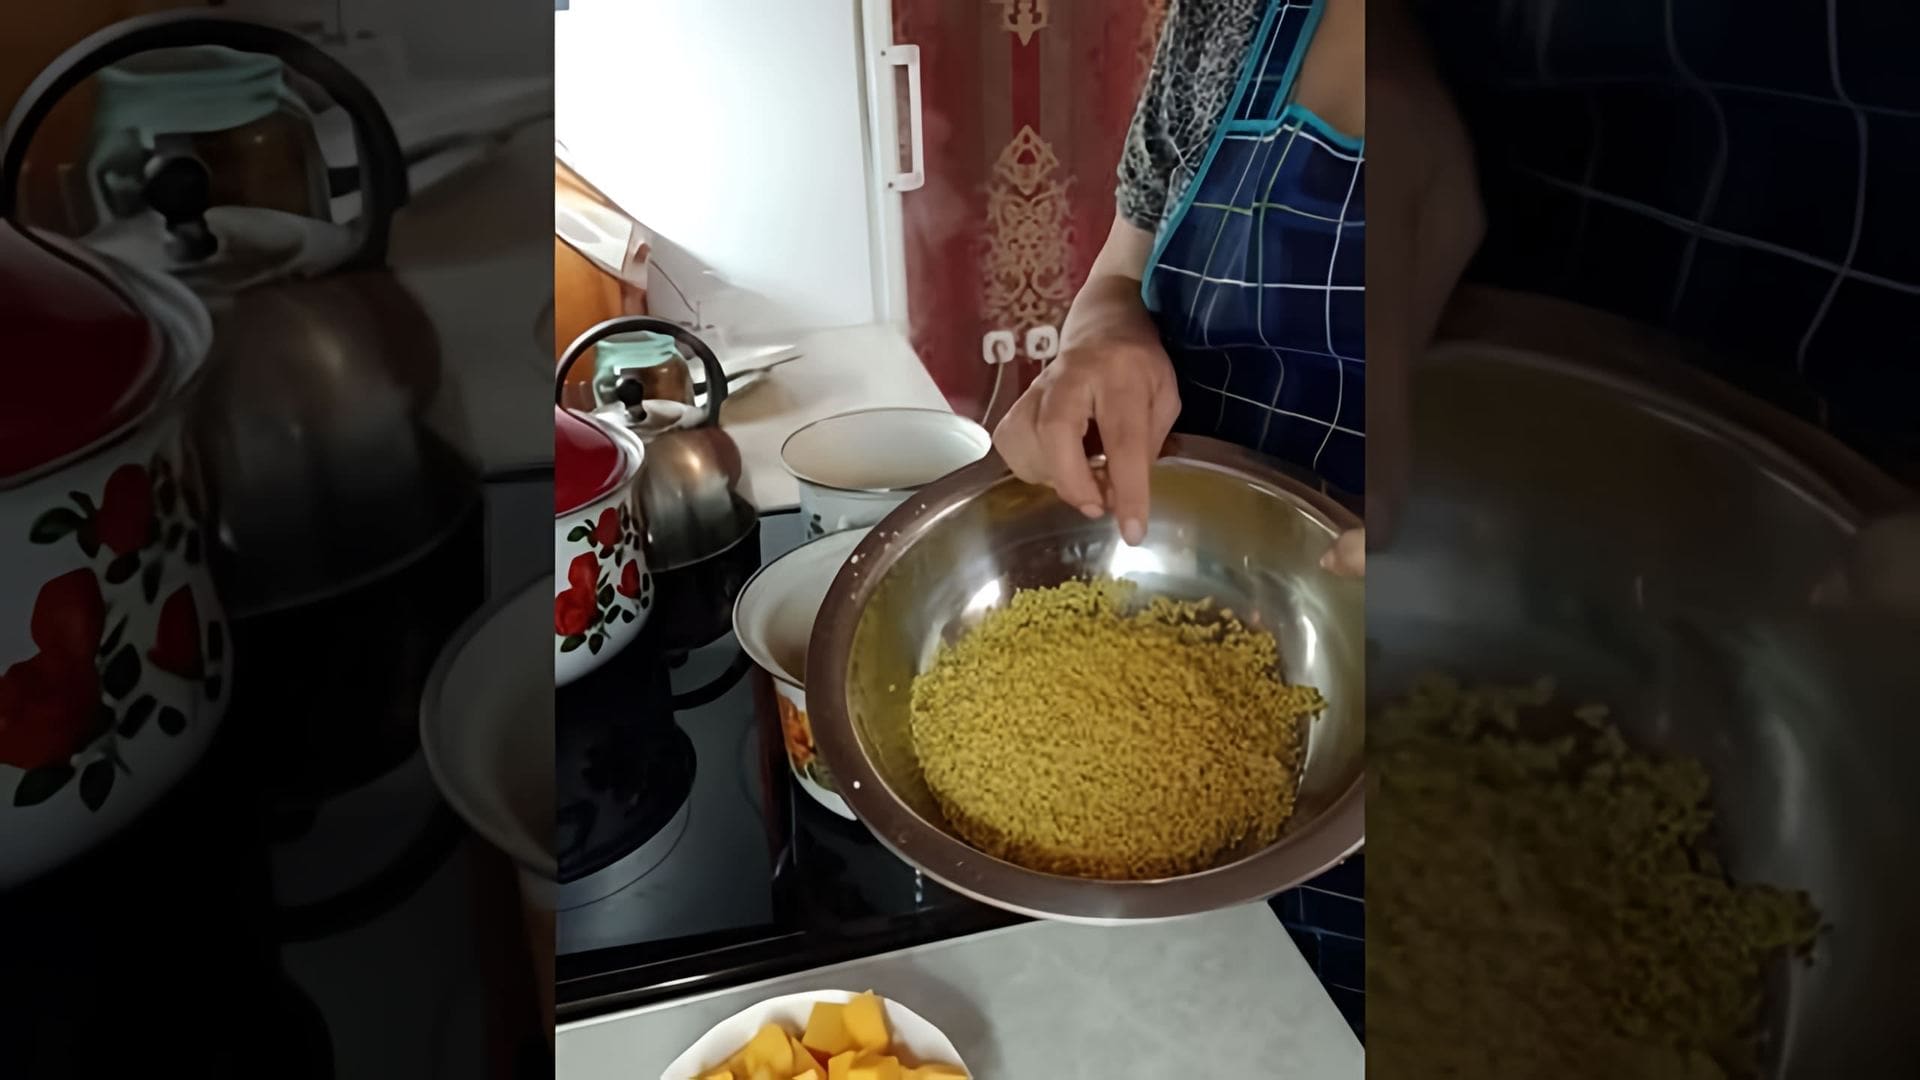 В этом видео демонстрируется процесс приготовления пшенной каши с тыквой